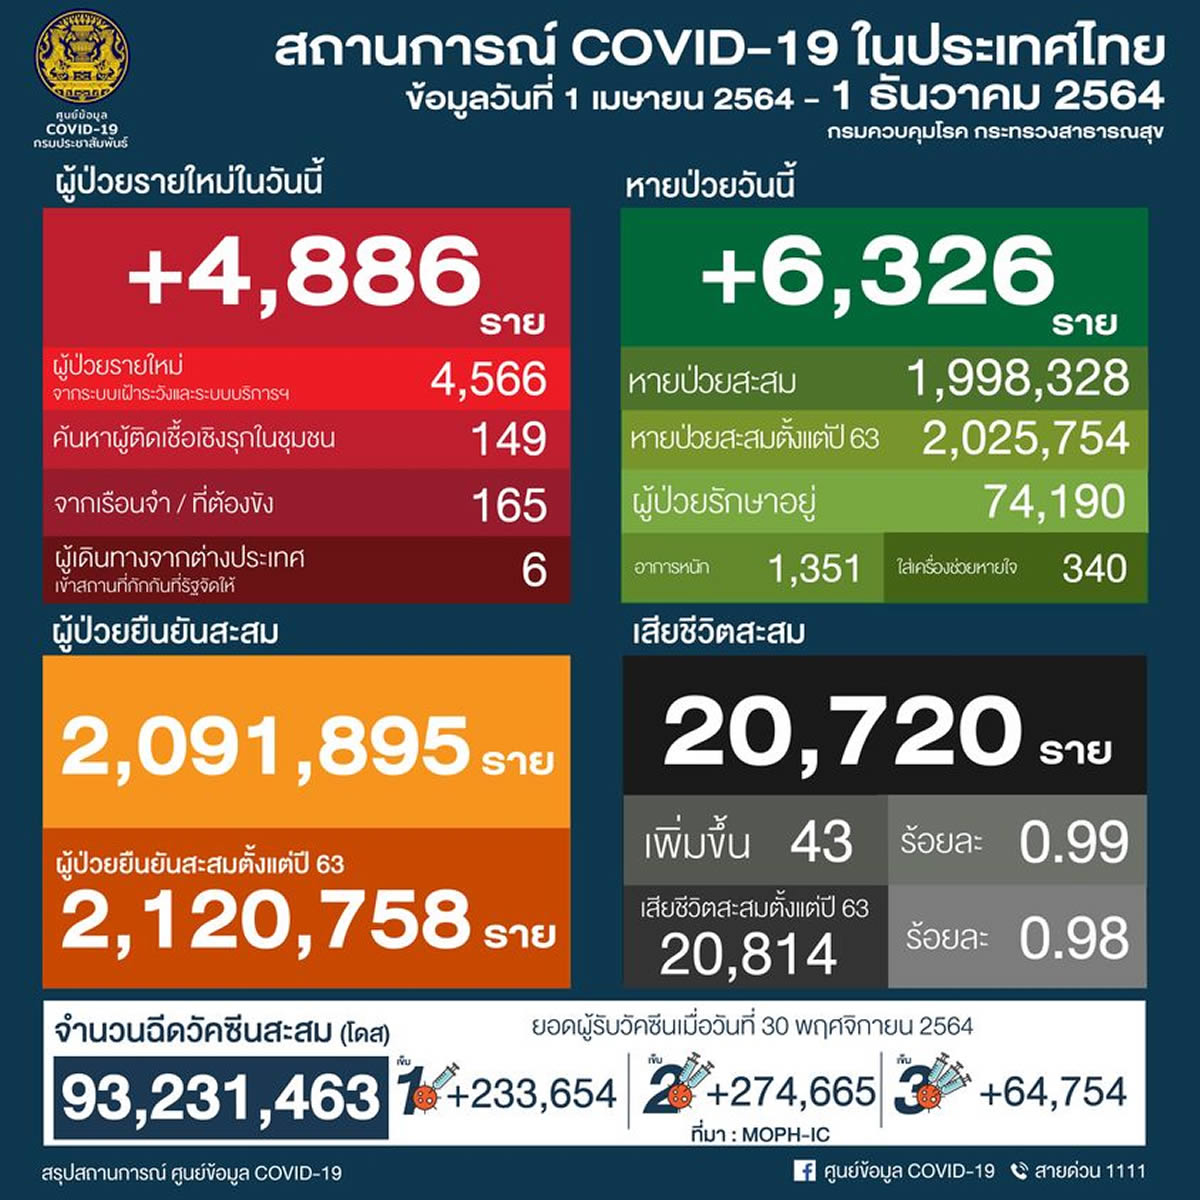 タイ 4,886人陽性 43人死亡／バンコク 794人陽性 2人死亡／チェンマイ 171人陽性［2021年12月1日発表］